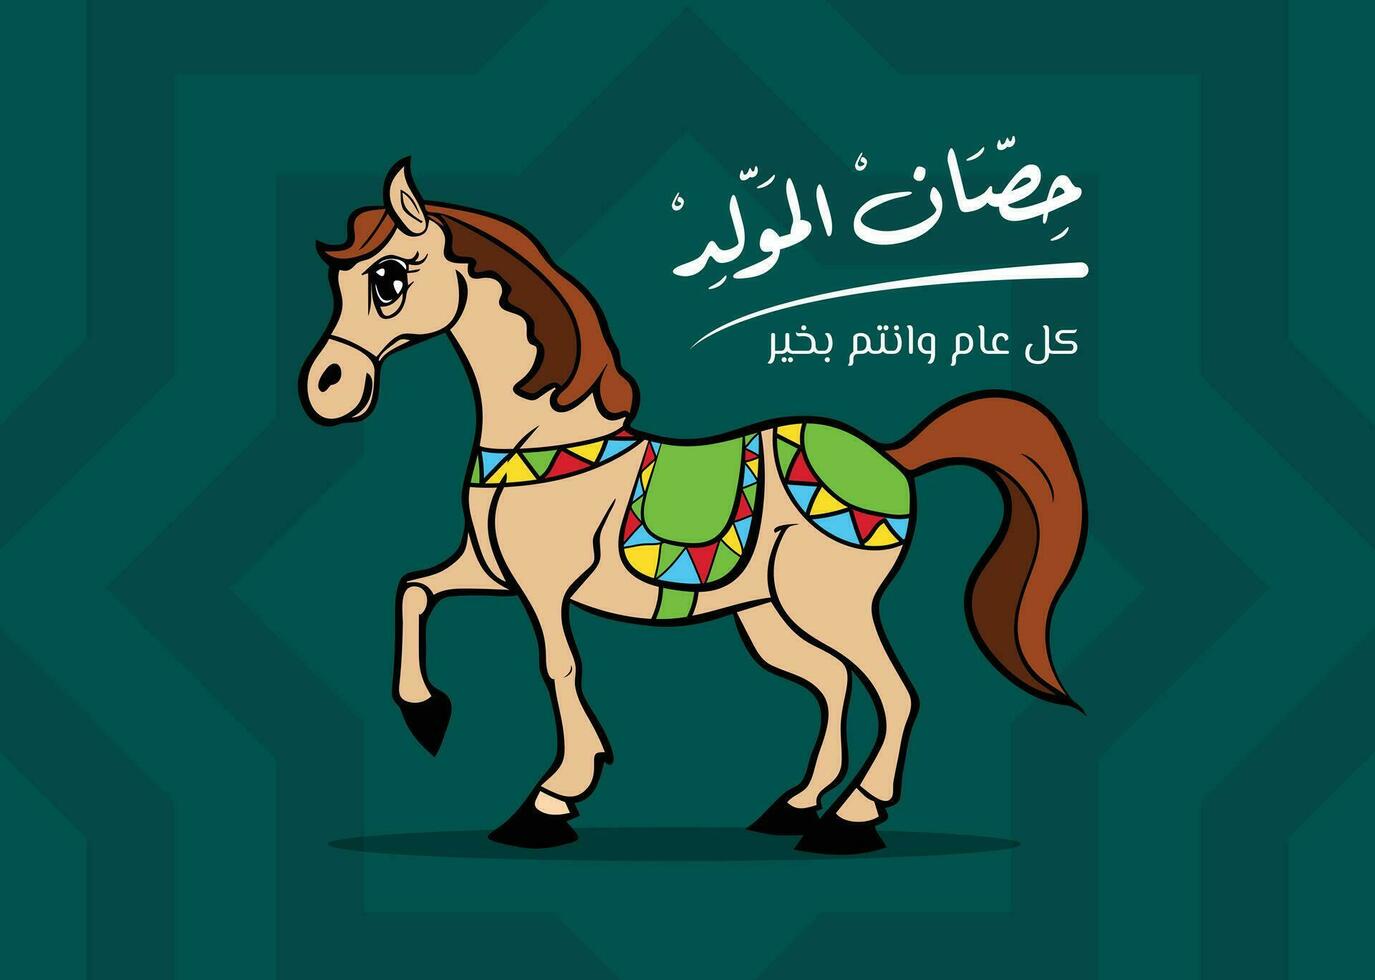 de heilig profeet verjaardag viering kaart ontwerp verjaardag paard in Arabisch taal Arabisch handgeschreven schoonschrift , tekenfilm verjaardag paard illustratie voor de heilig profeet Islamitisch viering vector